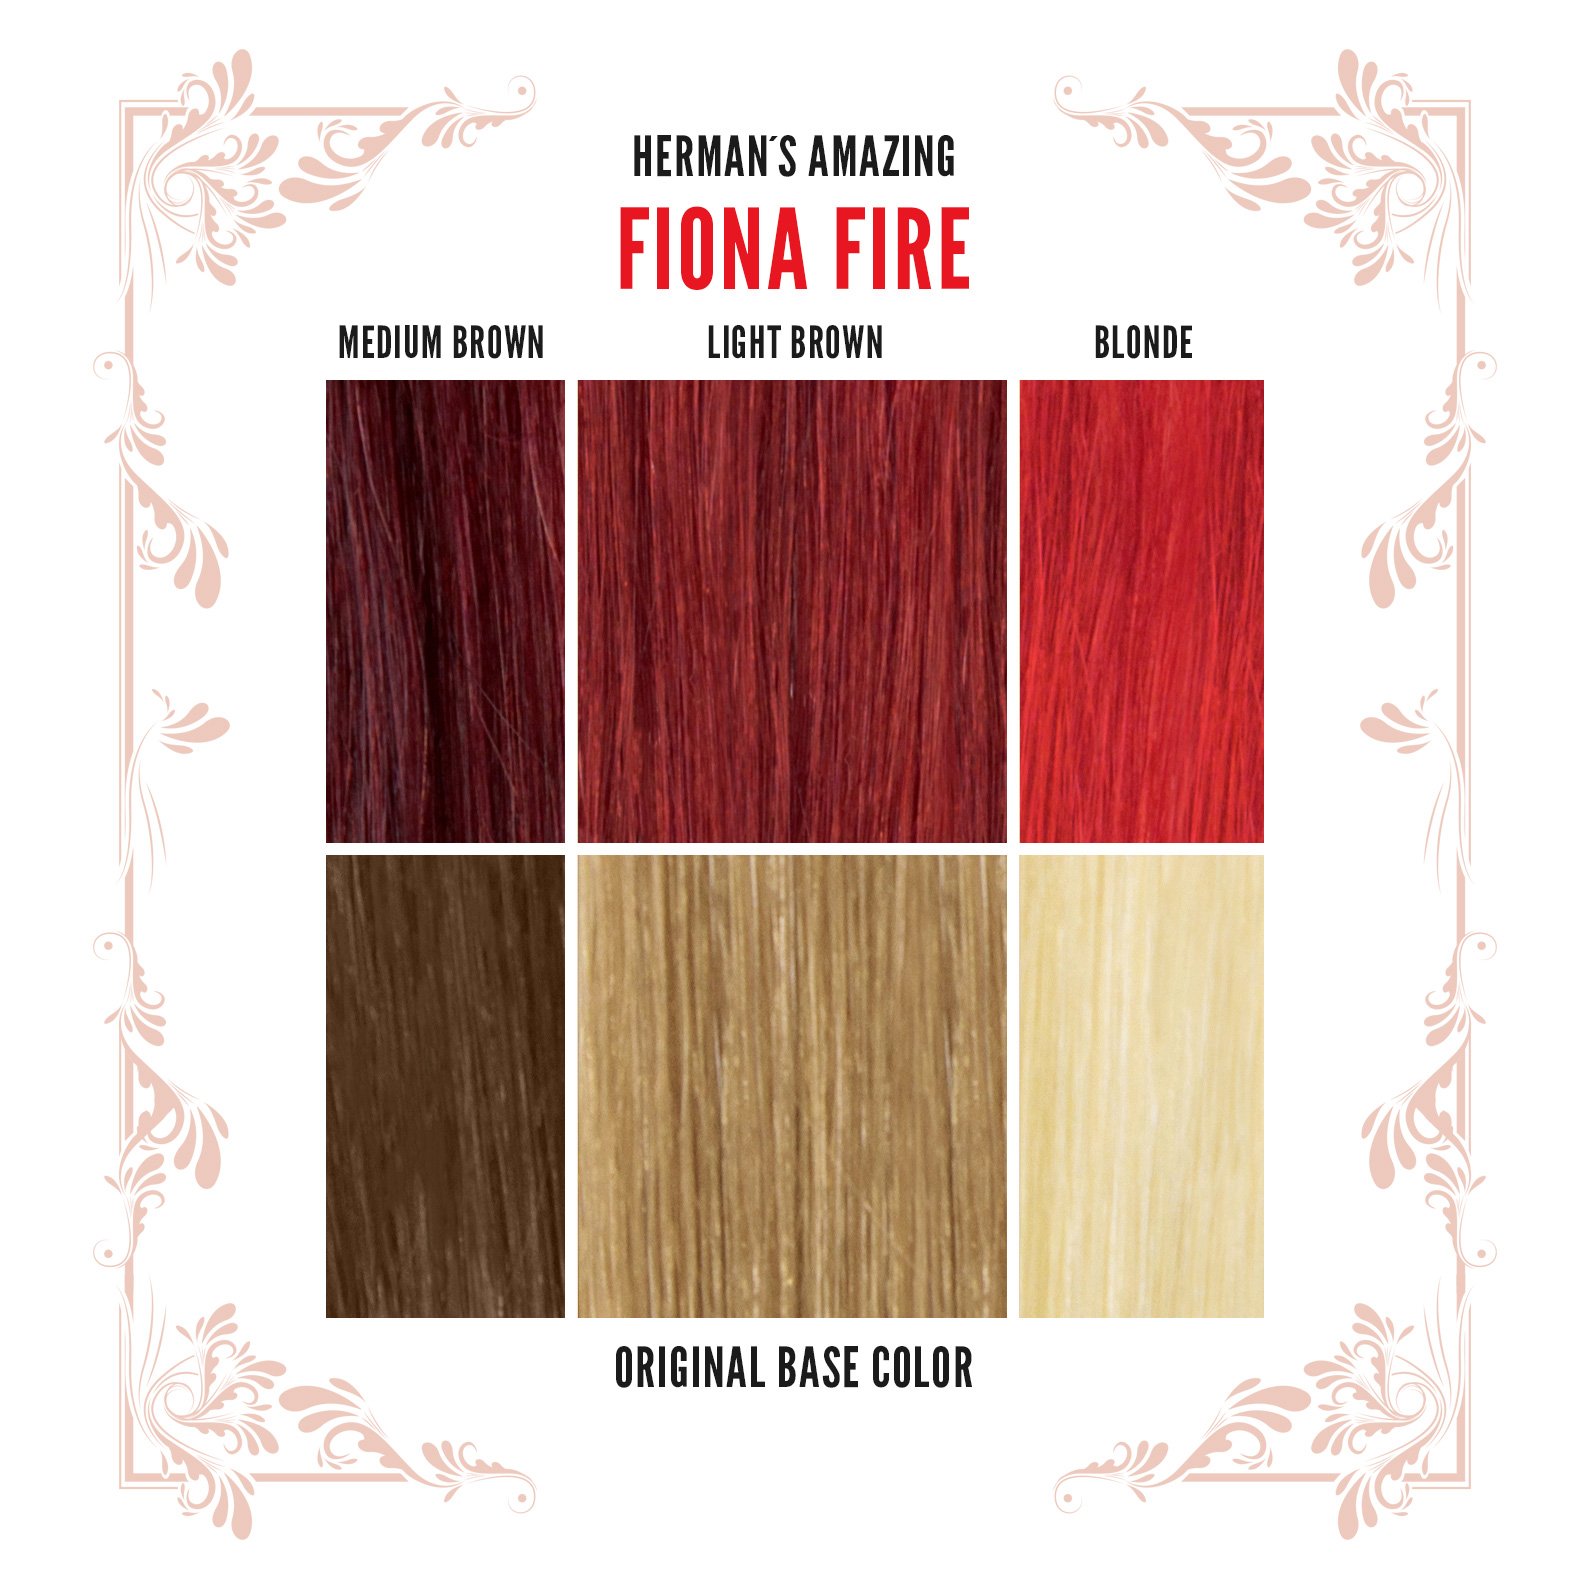 Herman's Amazing - Fiona Fire